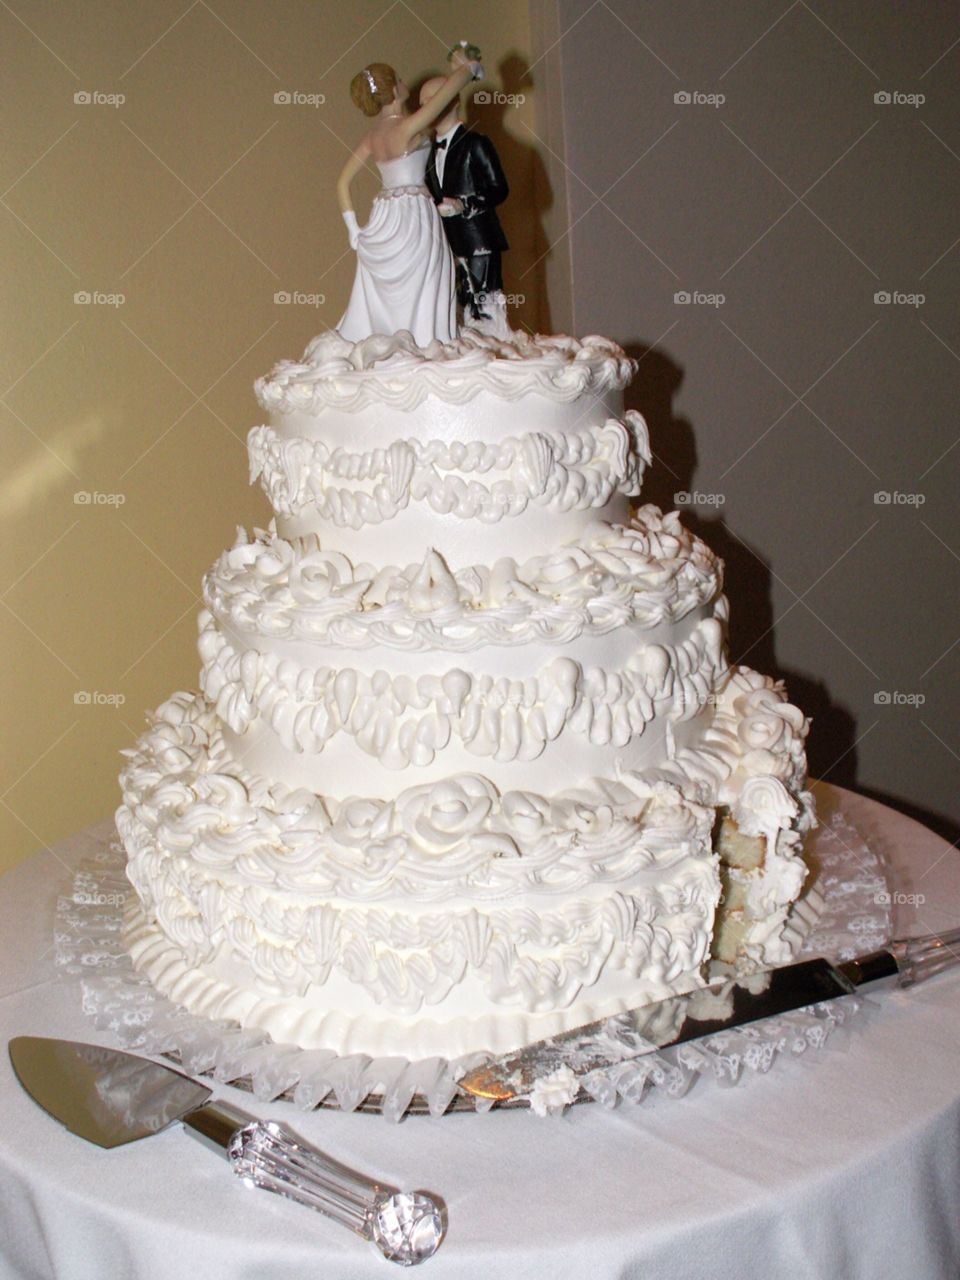 Wedding cake. Romantically delicious!